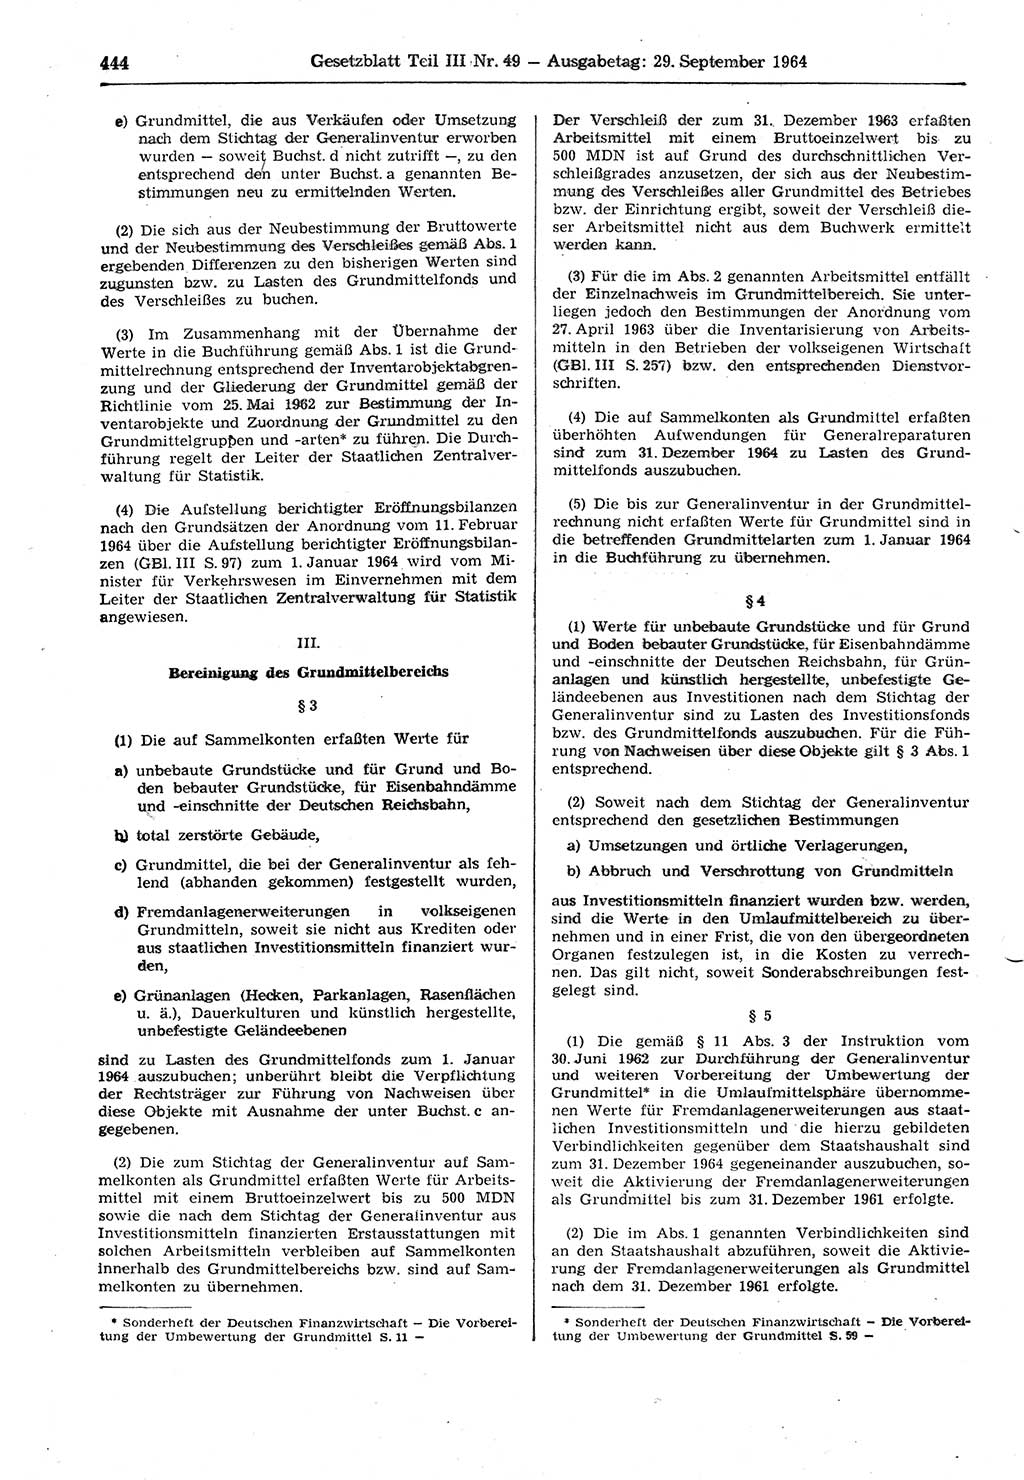 Gesetzblatt (GBl.) der Deutschen Demokratischen Republik (DDR) Teil ⅠⅠⅠ 1964, Seite 444 (GBl. DDR ⅠⅠⅠ 1964, S. 444)